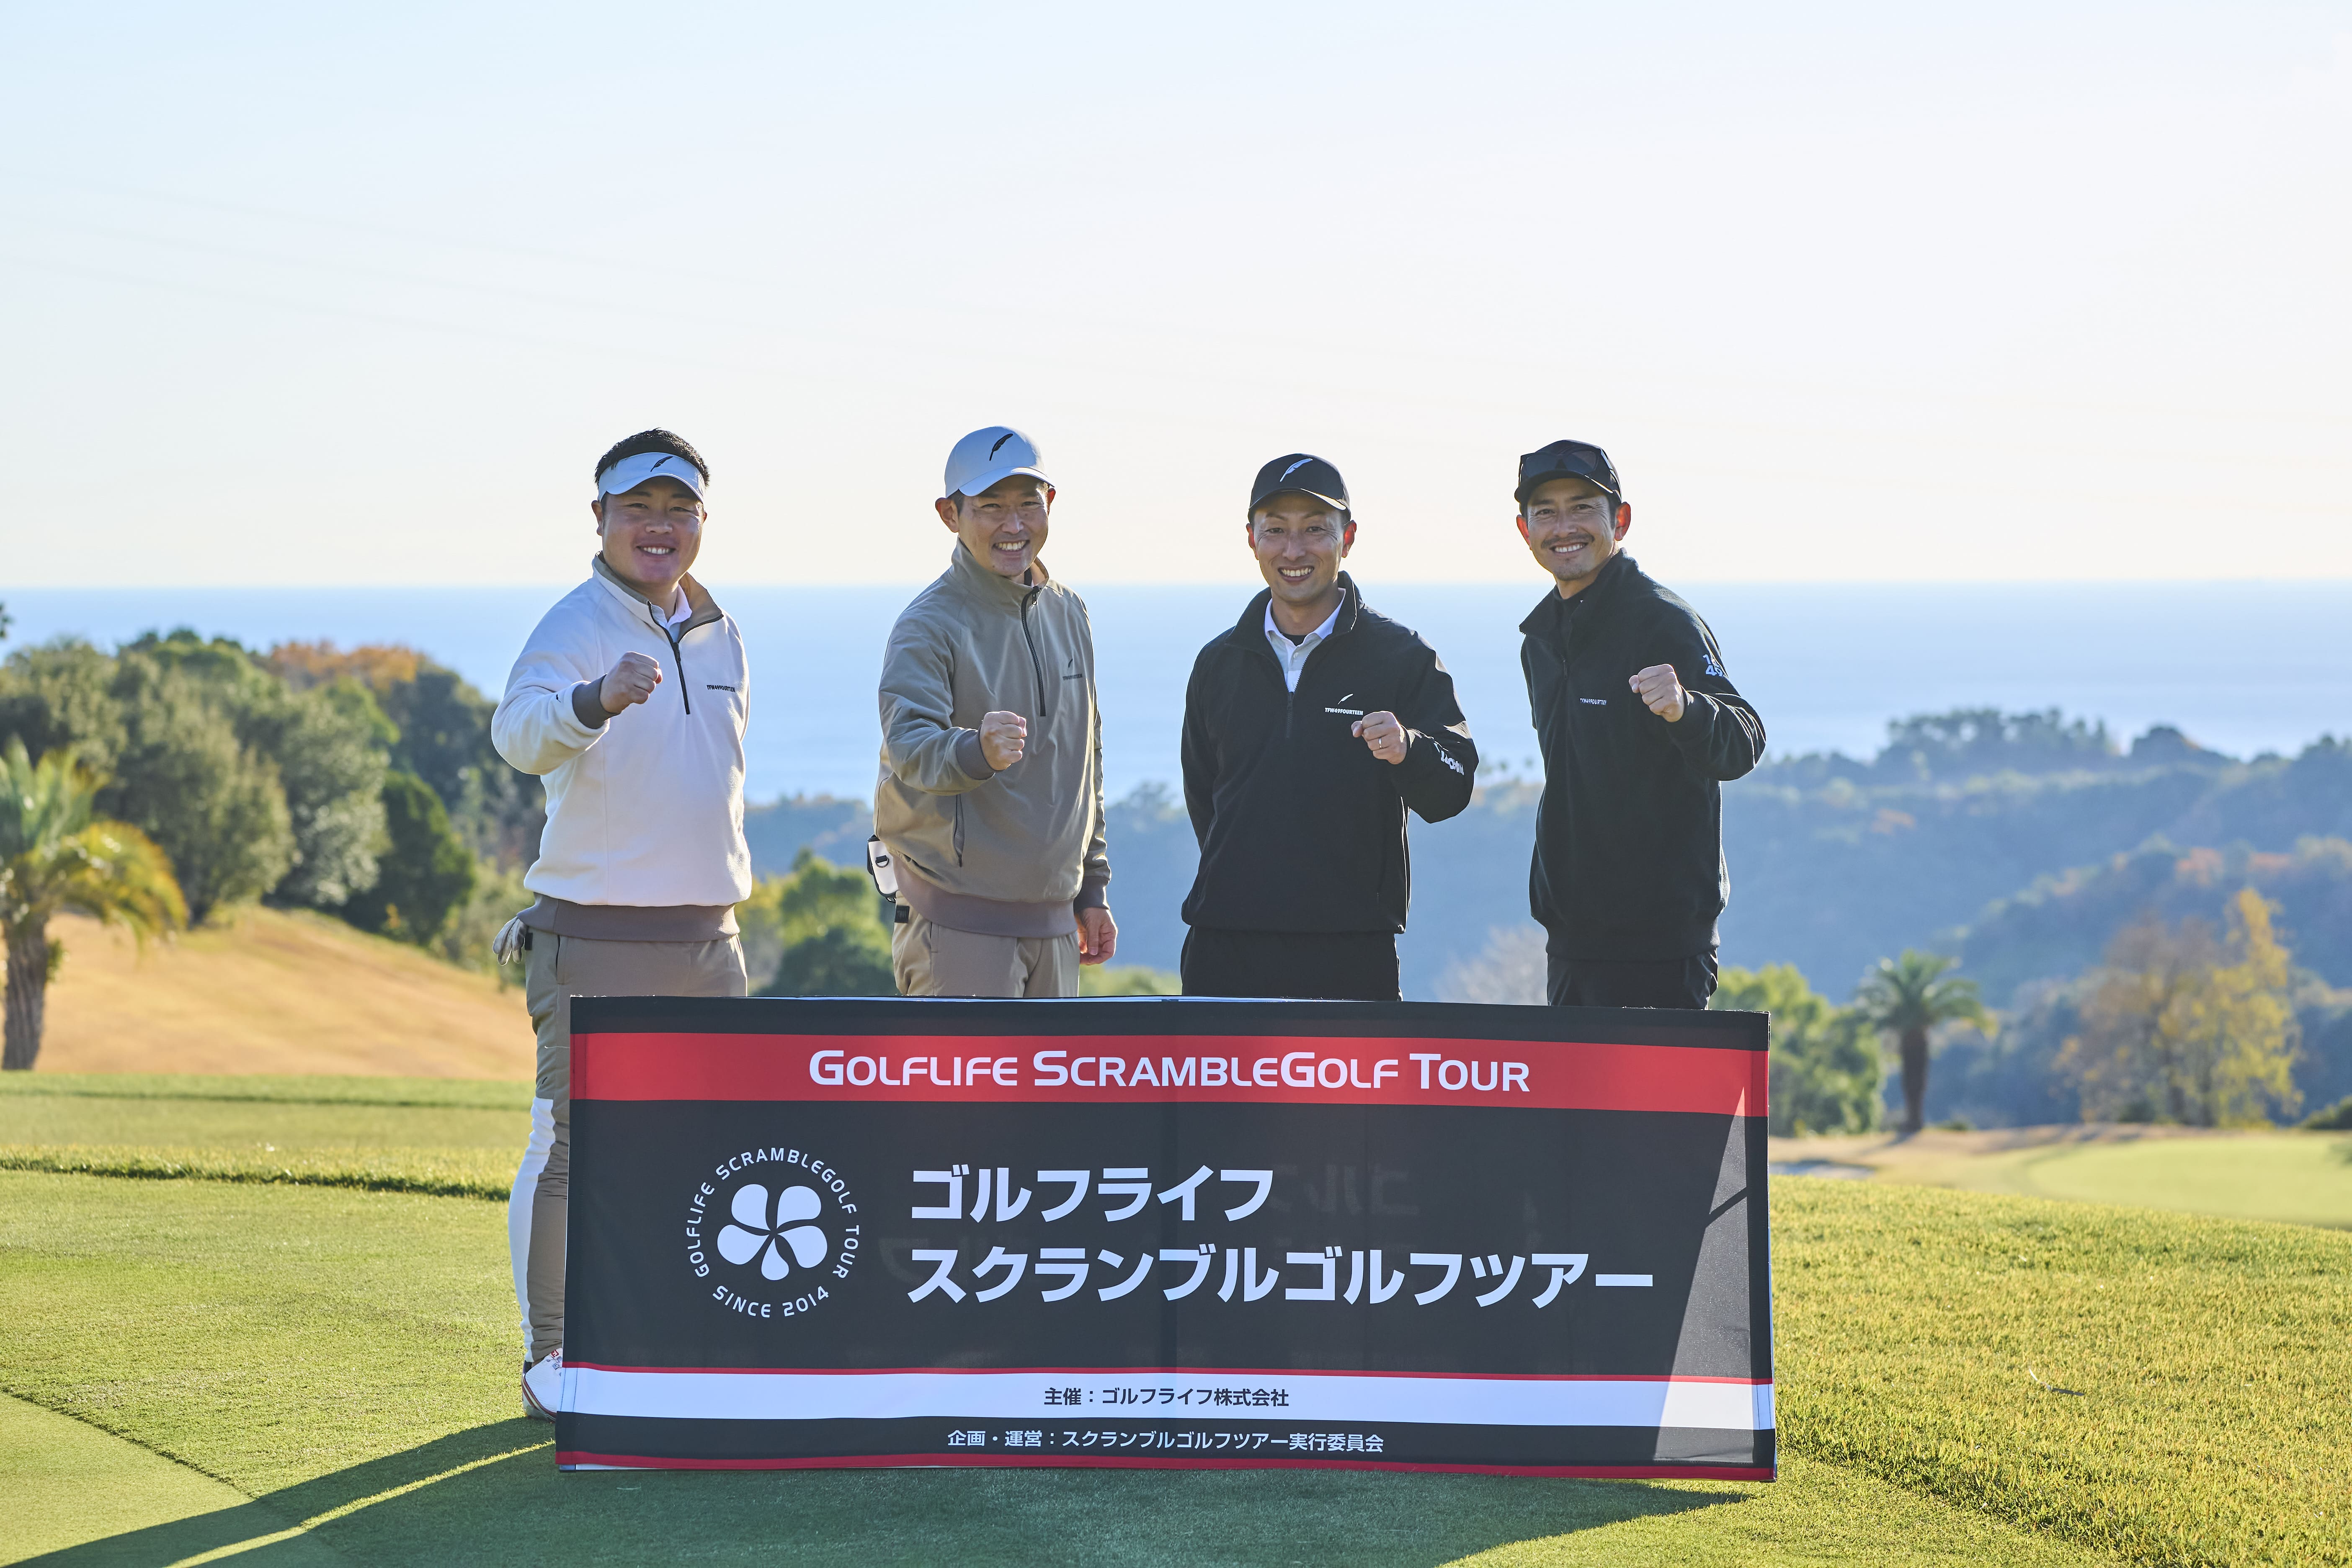 フォーティーンのスタッフが挑戦した「ゴルフライフ スクランブルゴルフツアー」
全国決勝の舞台はKochi黒潮カントリークラブ・黒潮コース。